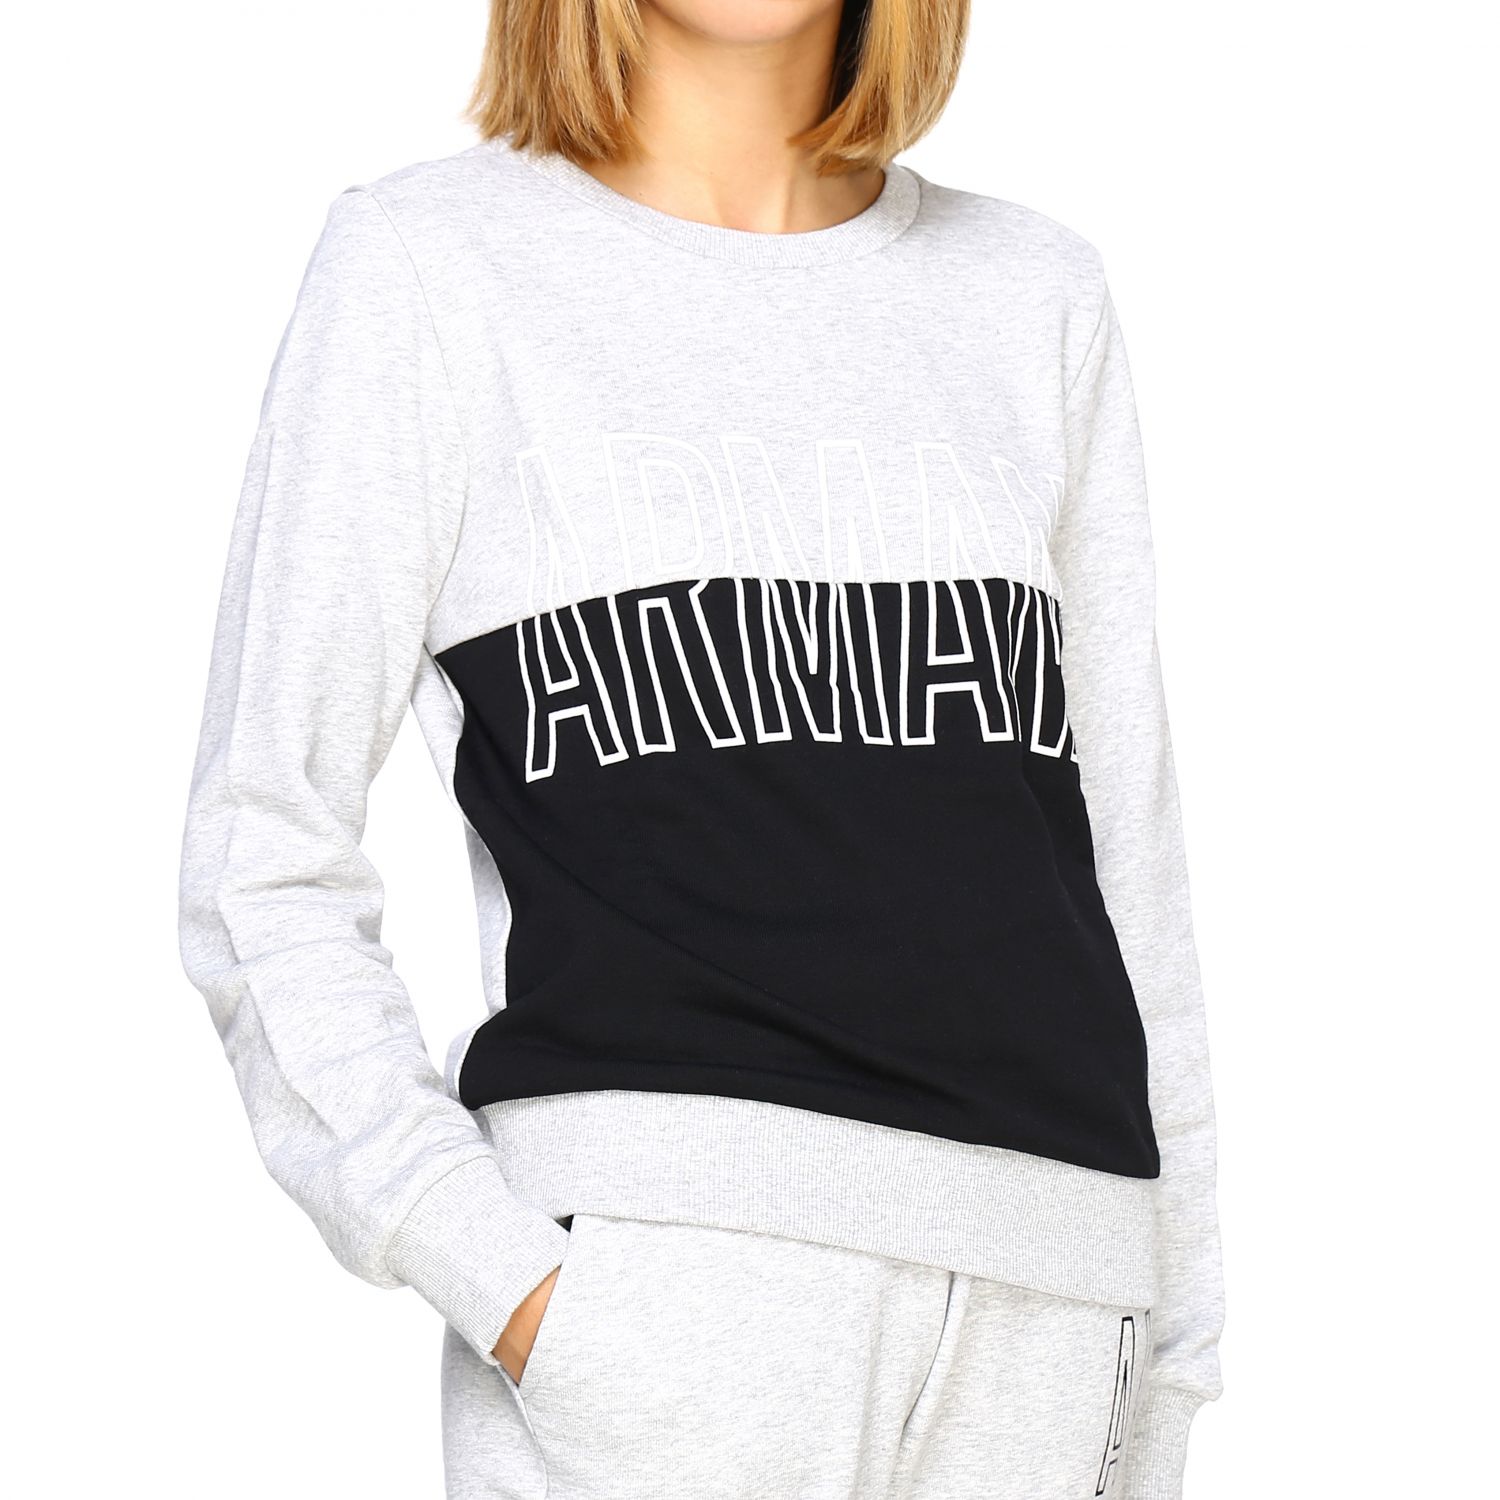 Armani Exchange Outlet: Sweater women | Sweatshirt Armani Exchange ...